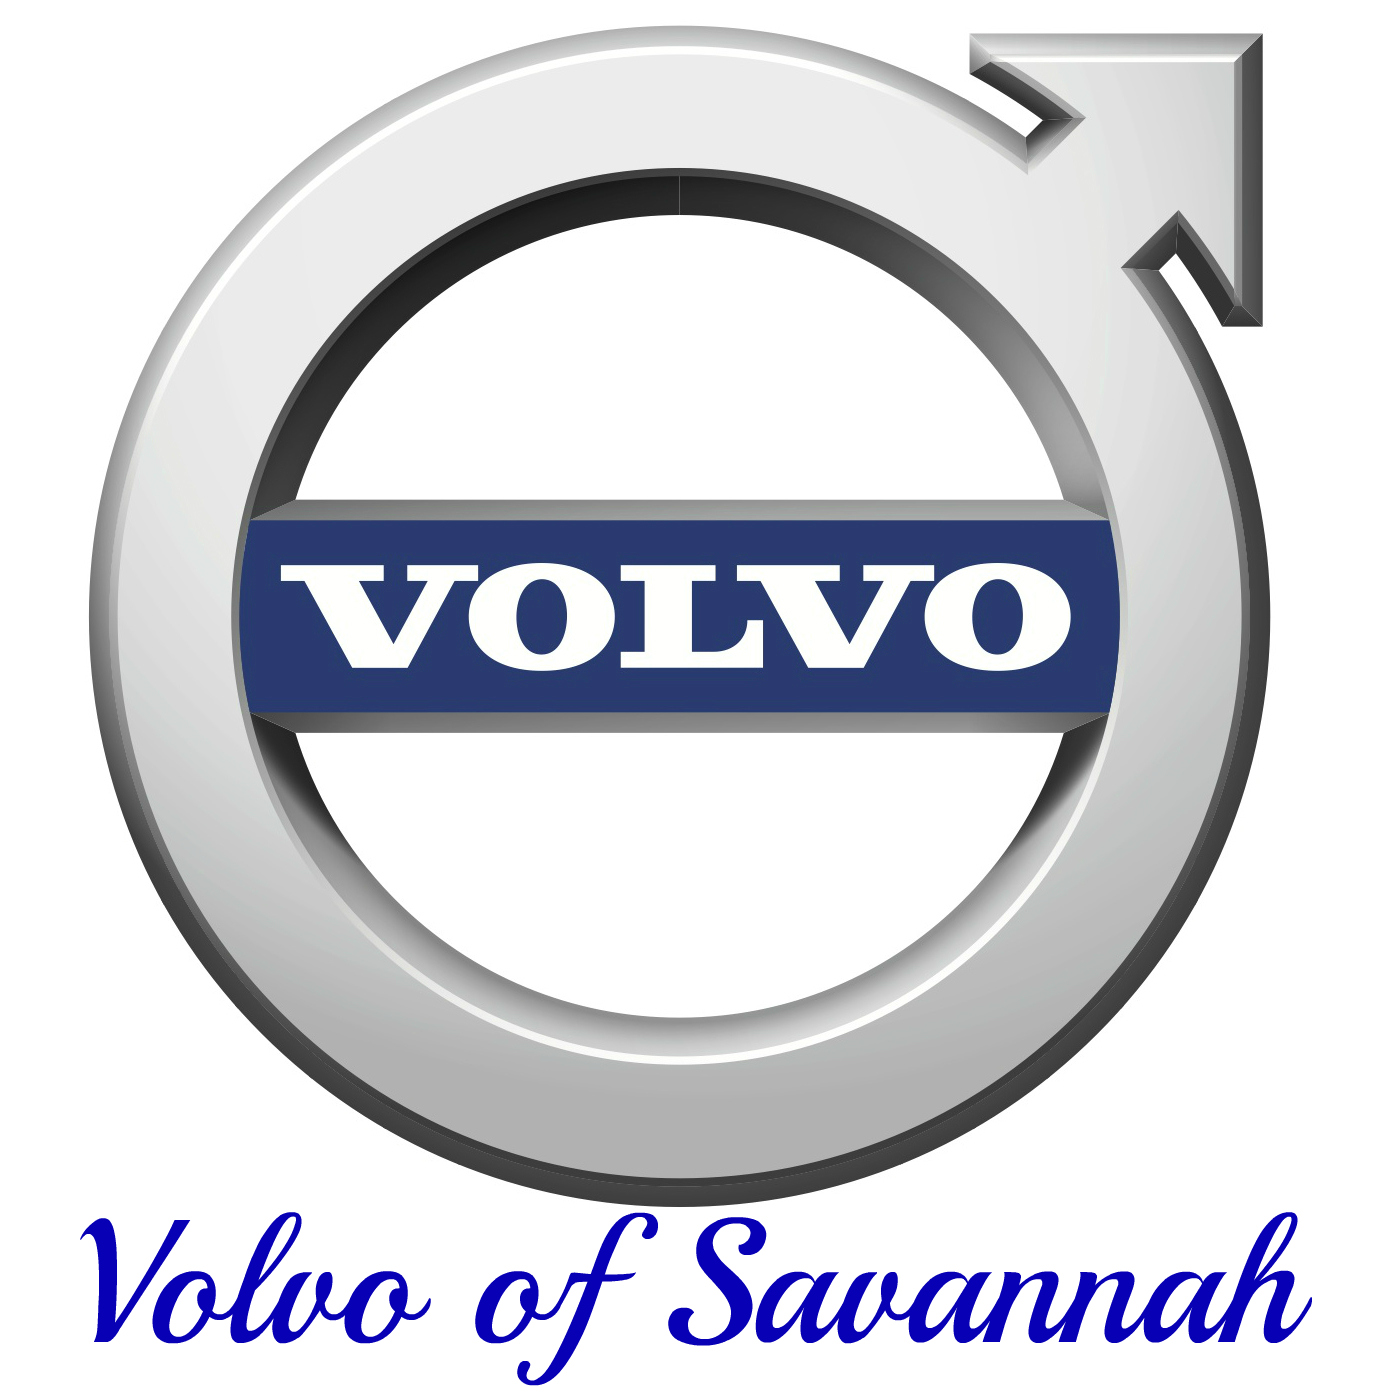 Volvo of Savannah Logo